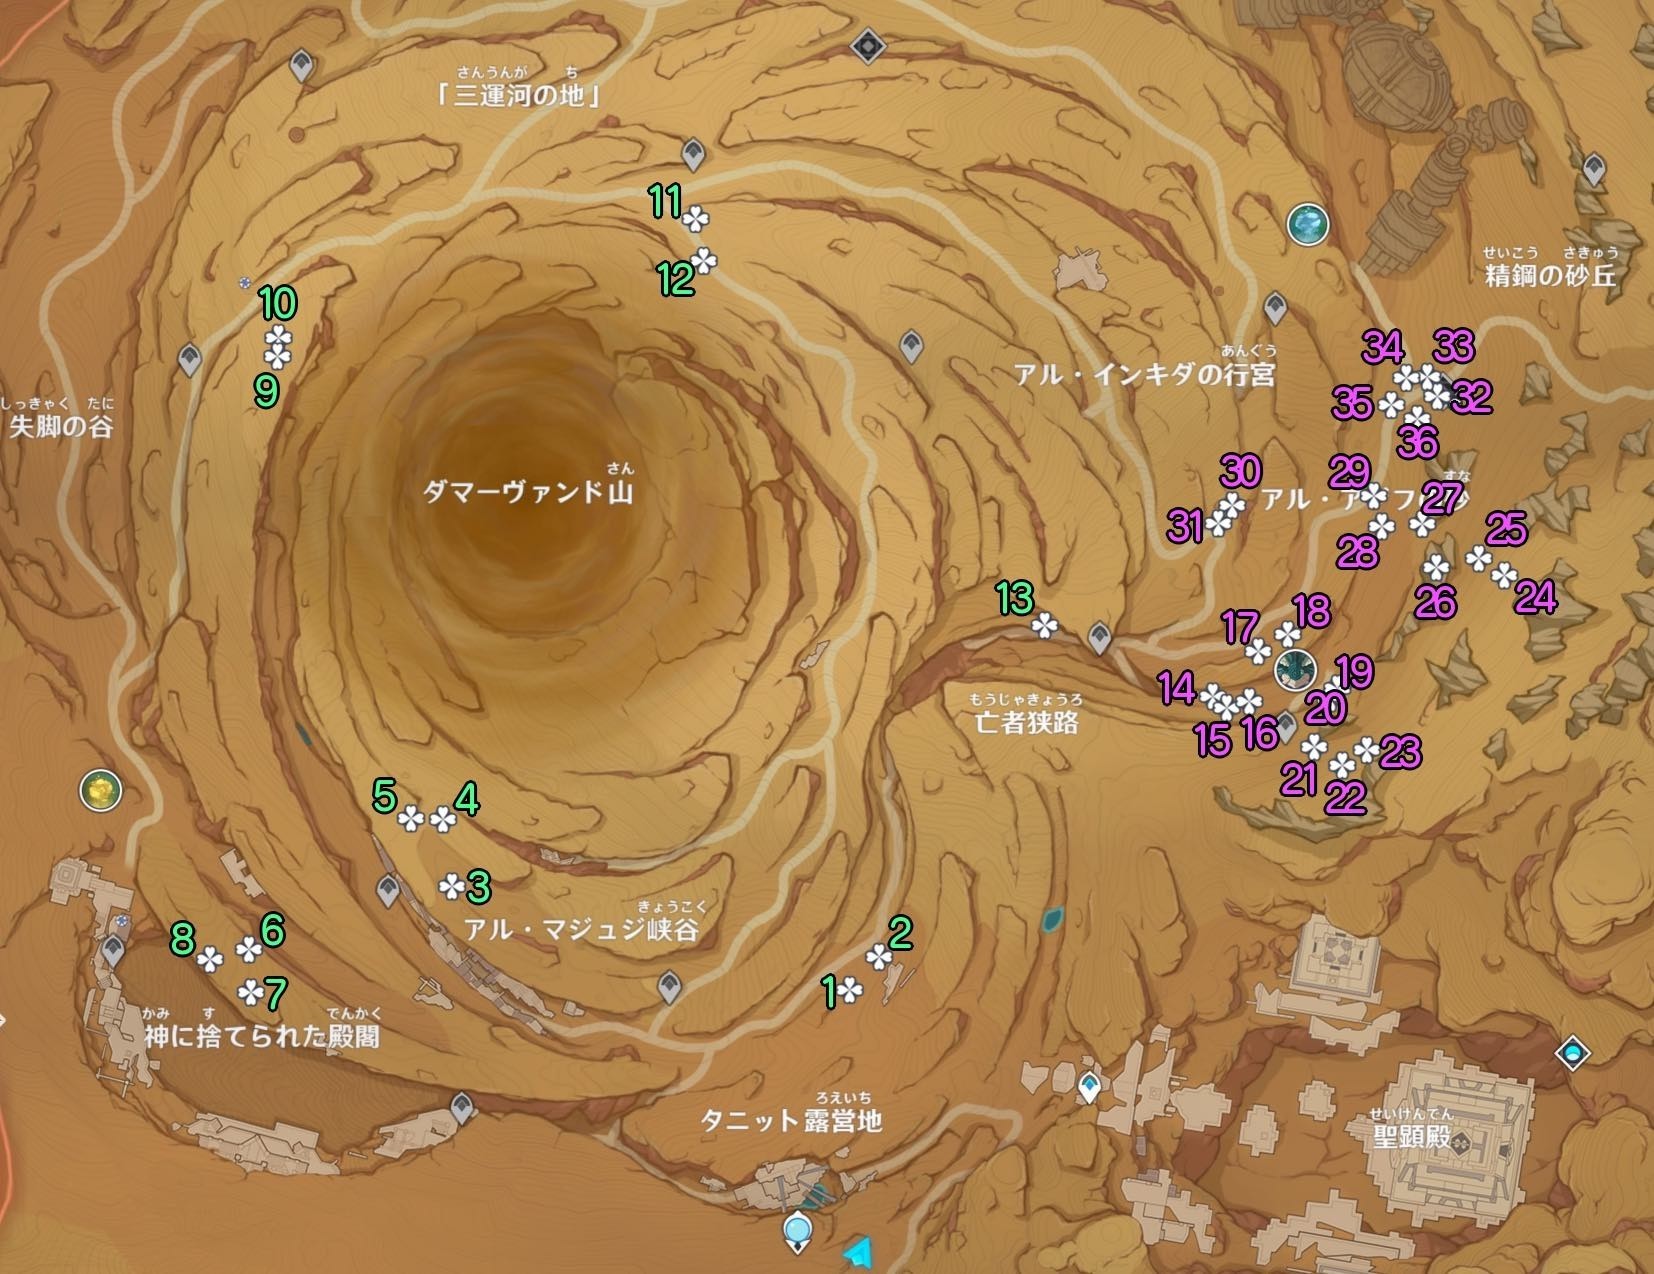 《原神》3.4沙脂蛹收集地图点位及分布 沙脂蛹怎么获得_地上区域 - 第2张